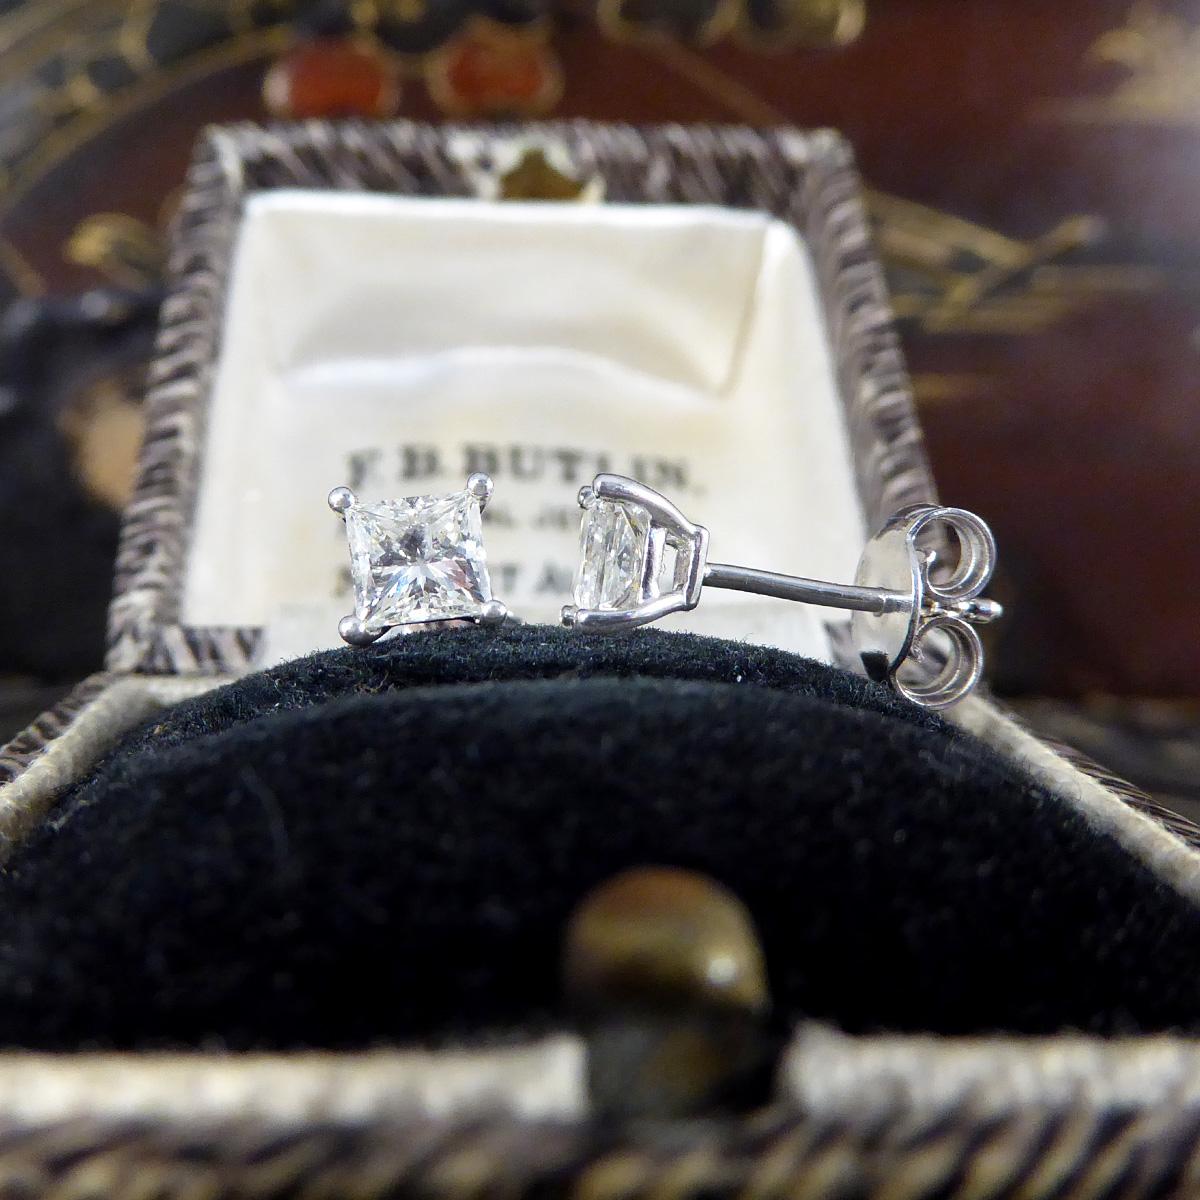 Princess Cut Diamond Stud Earrings Weighing 0.91 Carat in 18 Carat White Gold 3